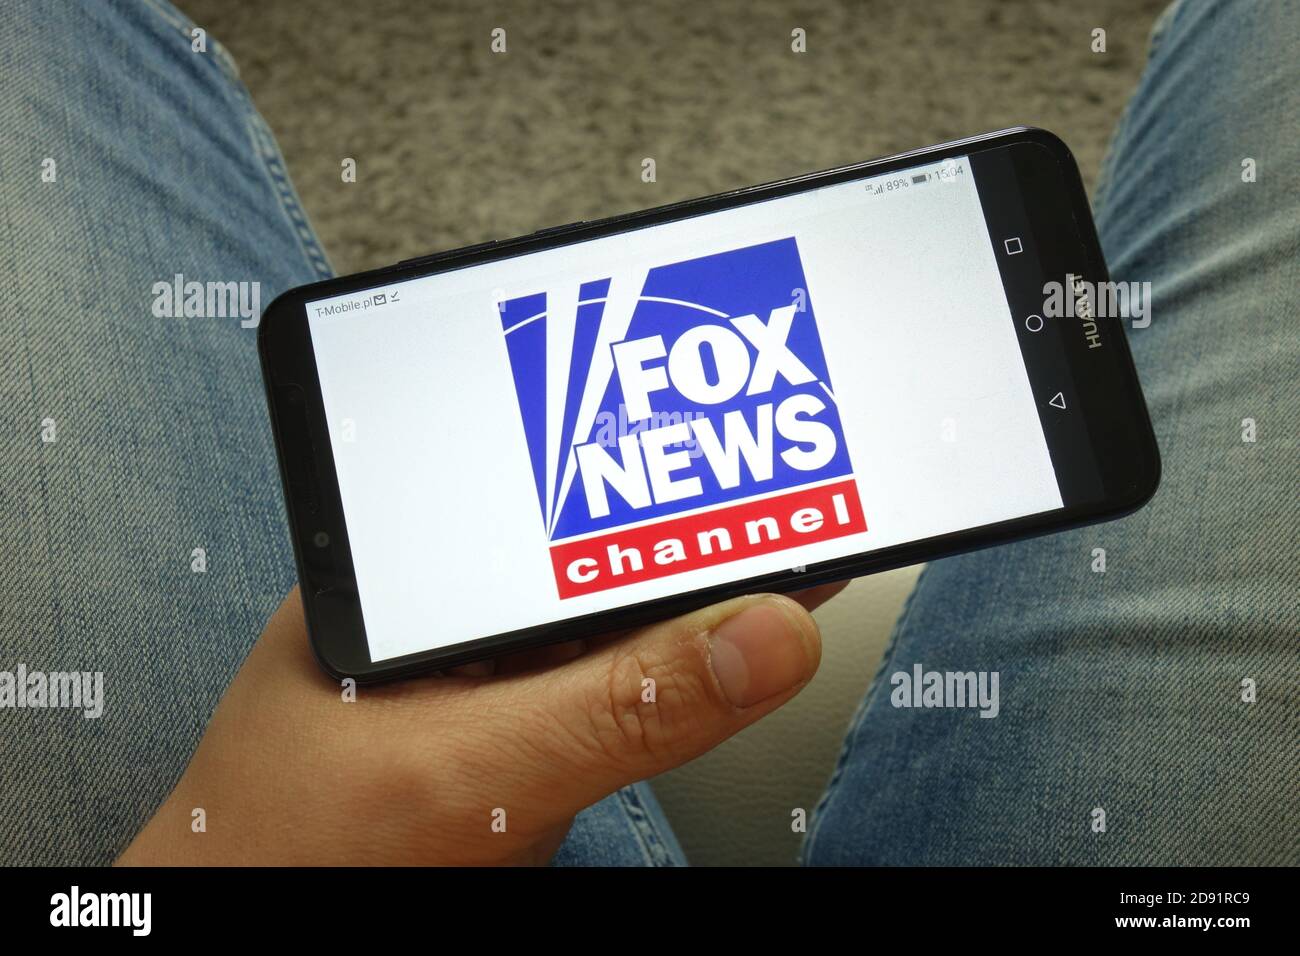 Homme tenant un smartphone avec le logo Fox News Channel Banque D'Images